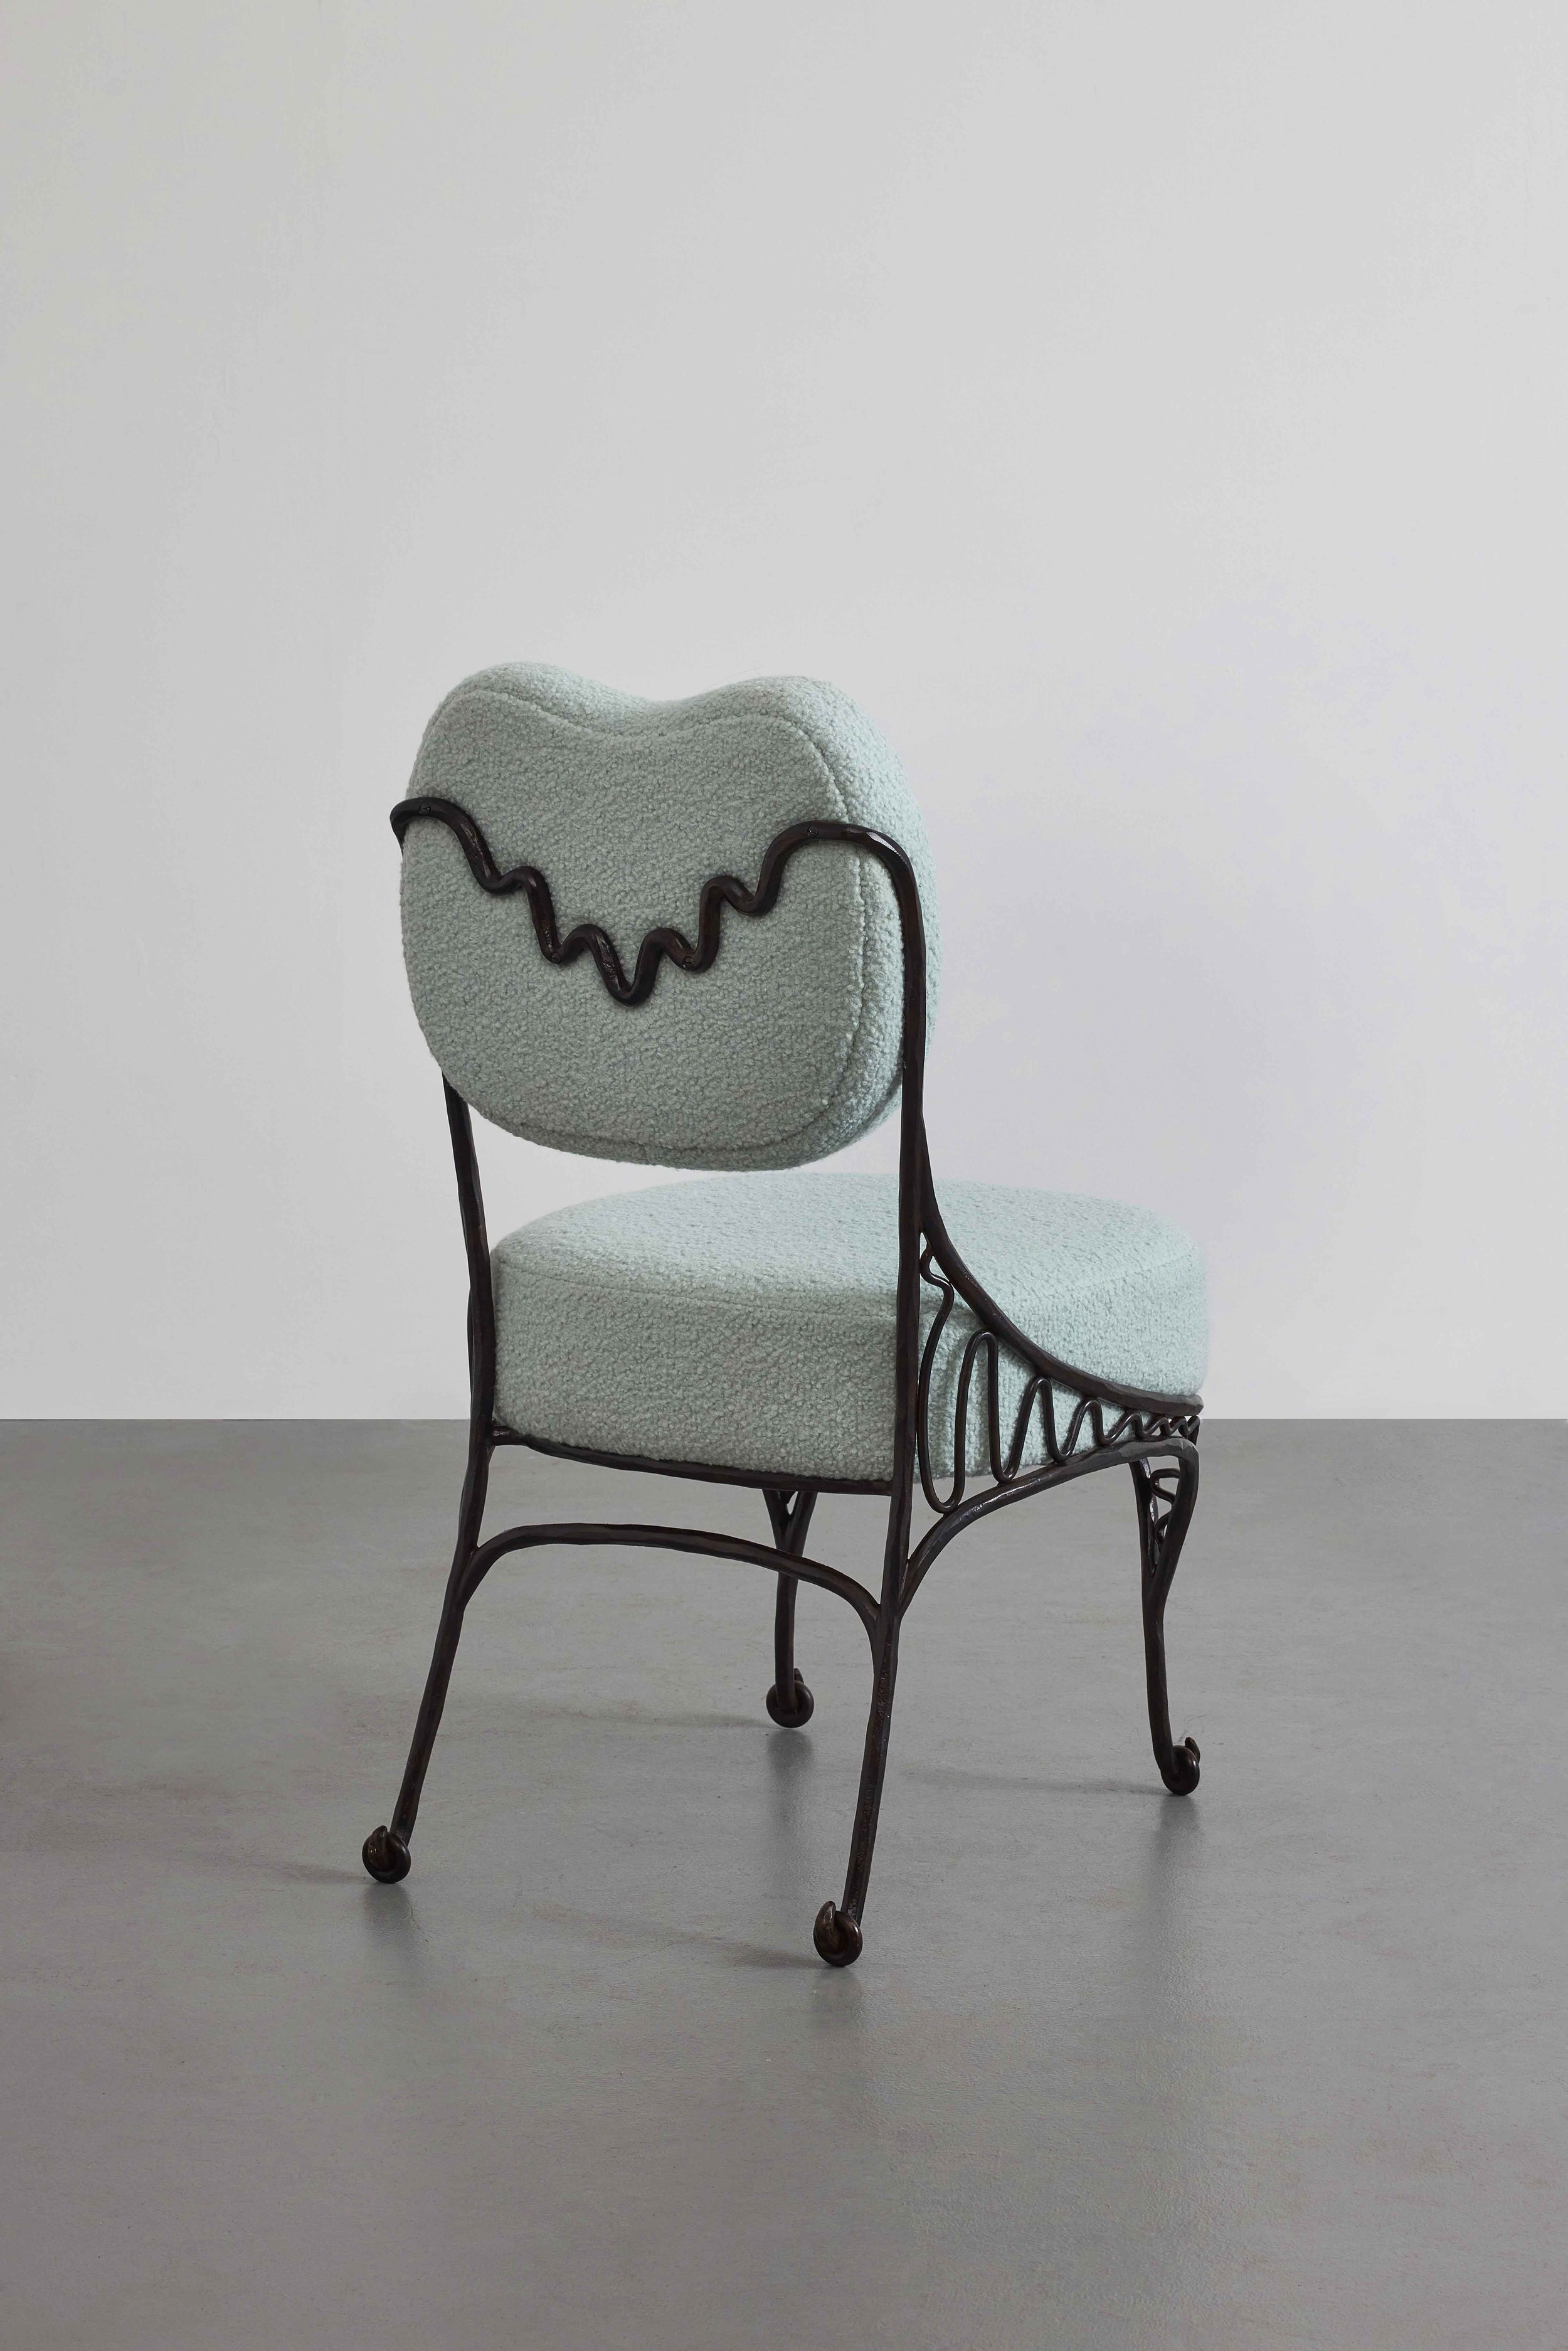 3.MB Chair 'Operetta'.jpg